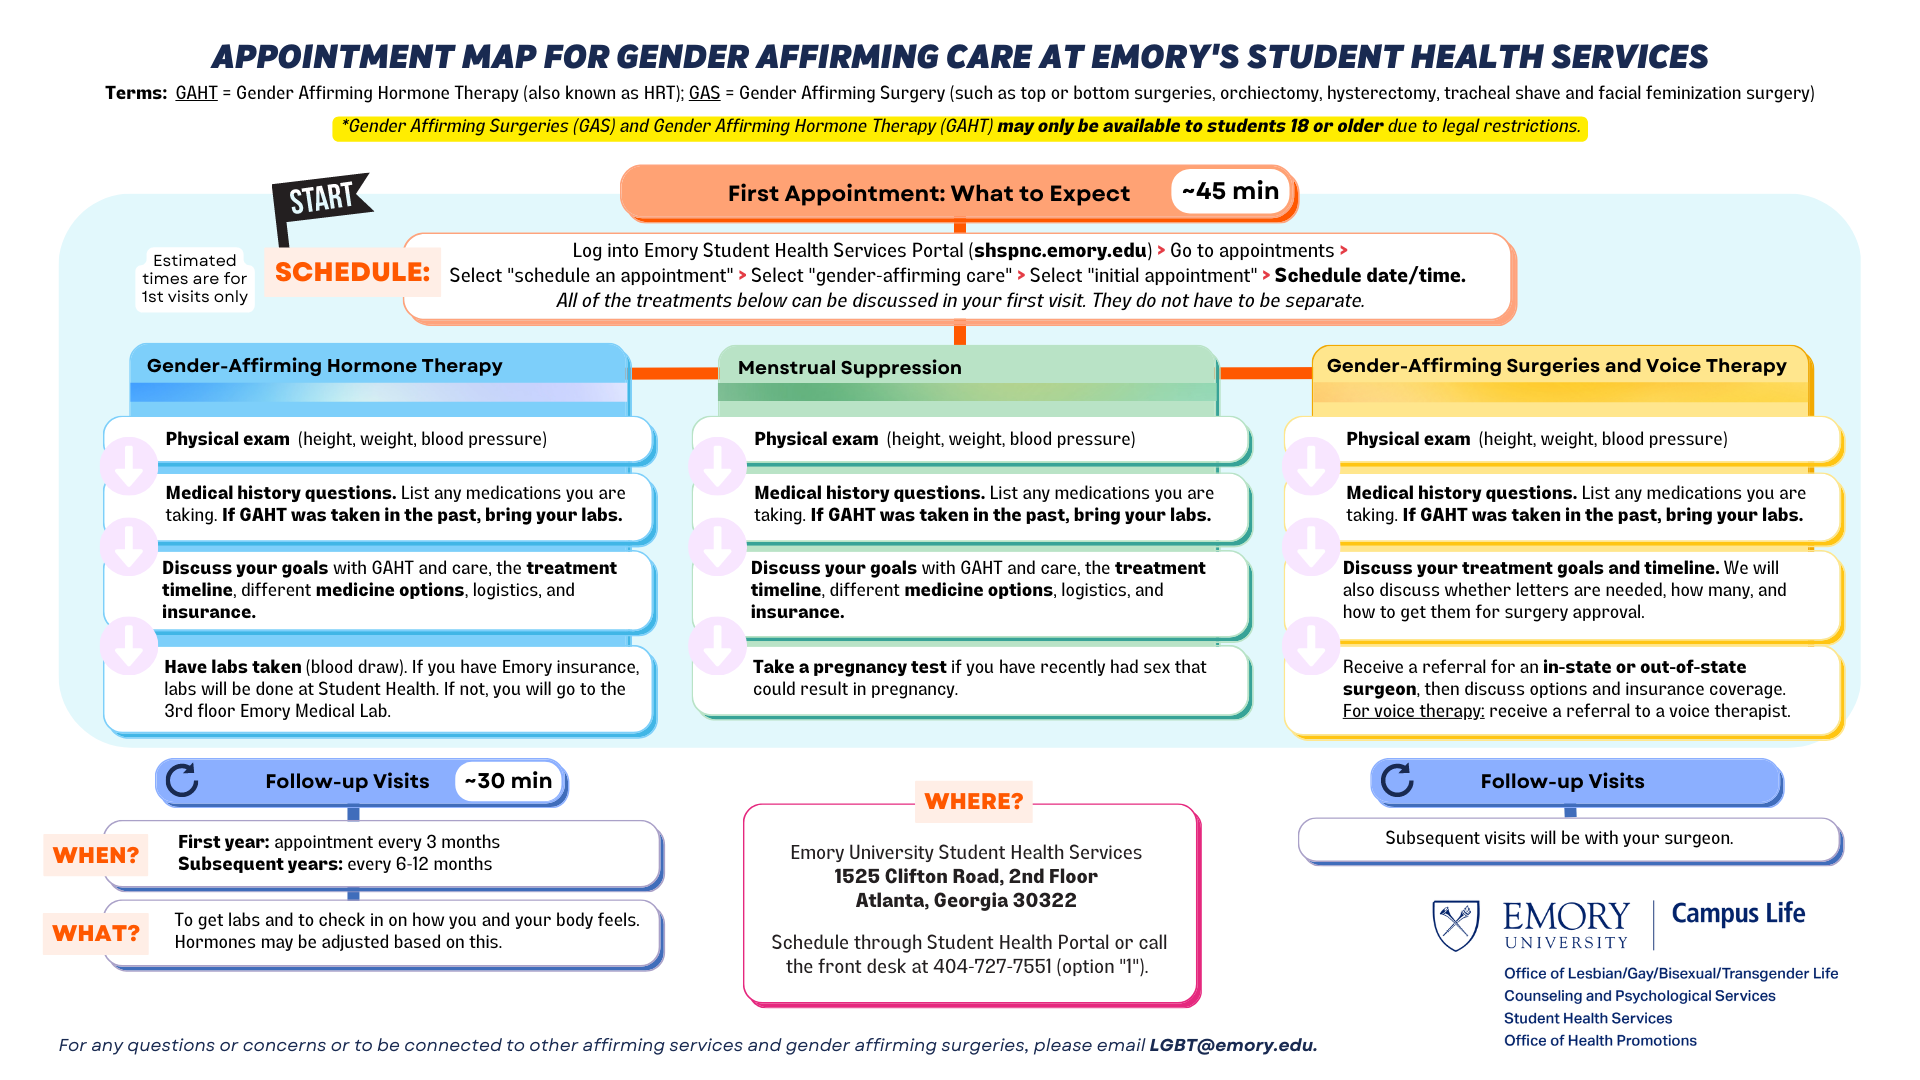 flyer explaining gender affirming care resources at SHS